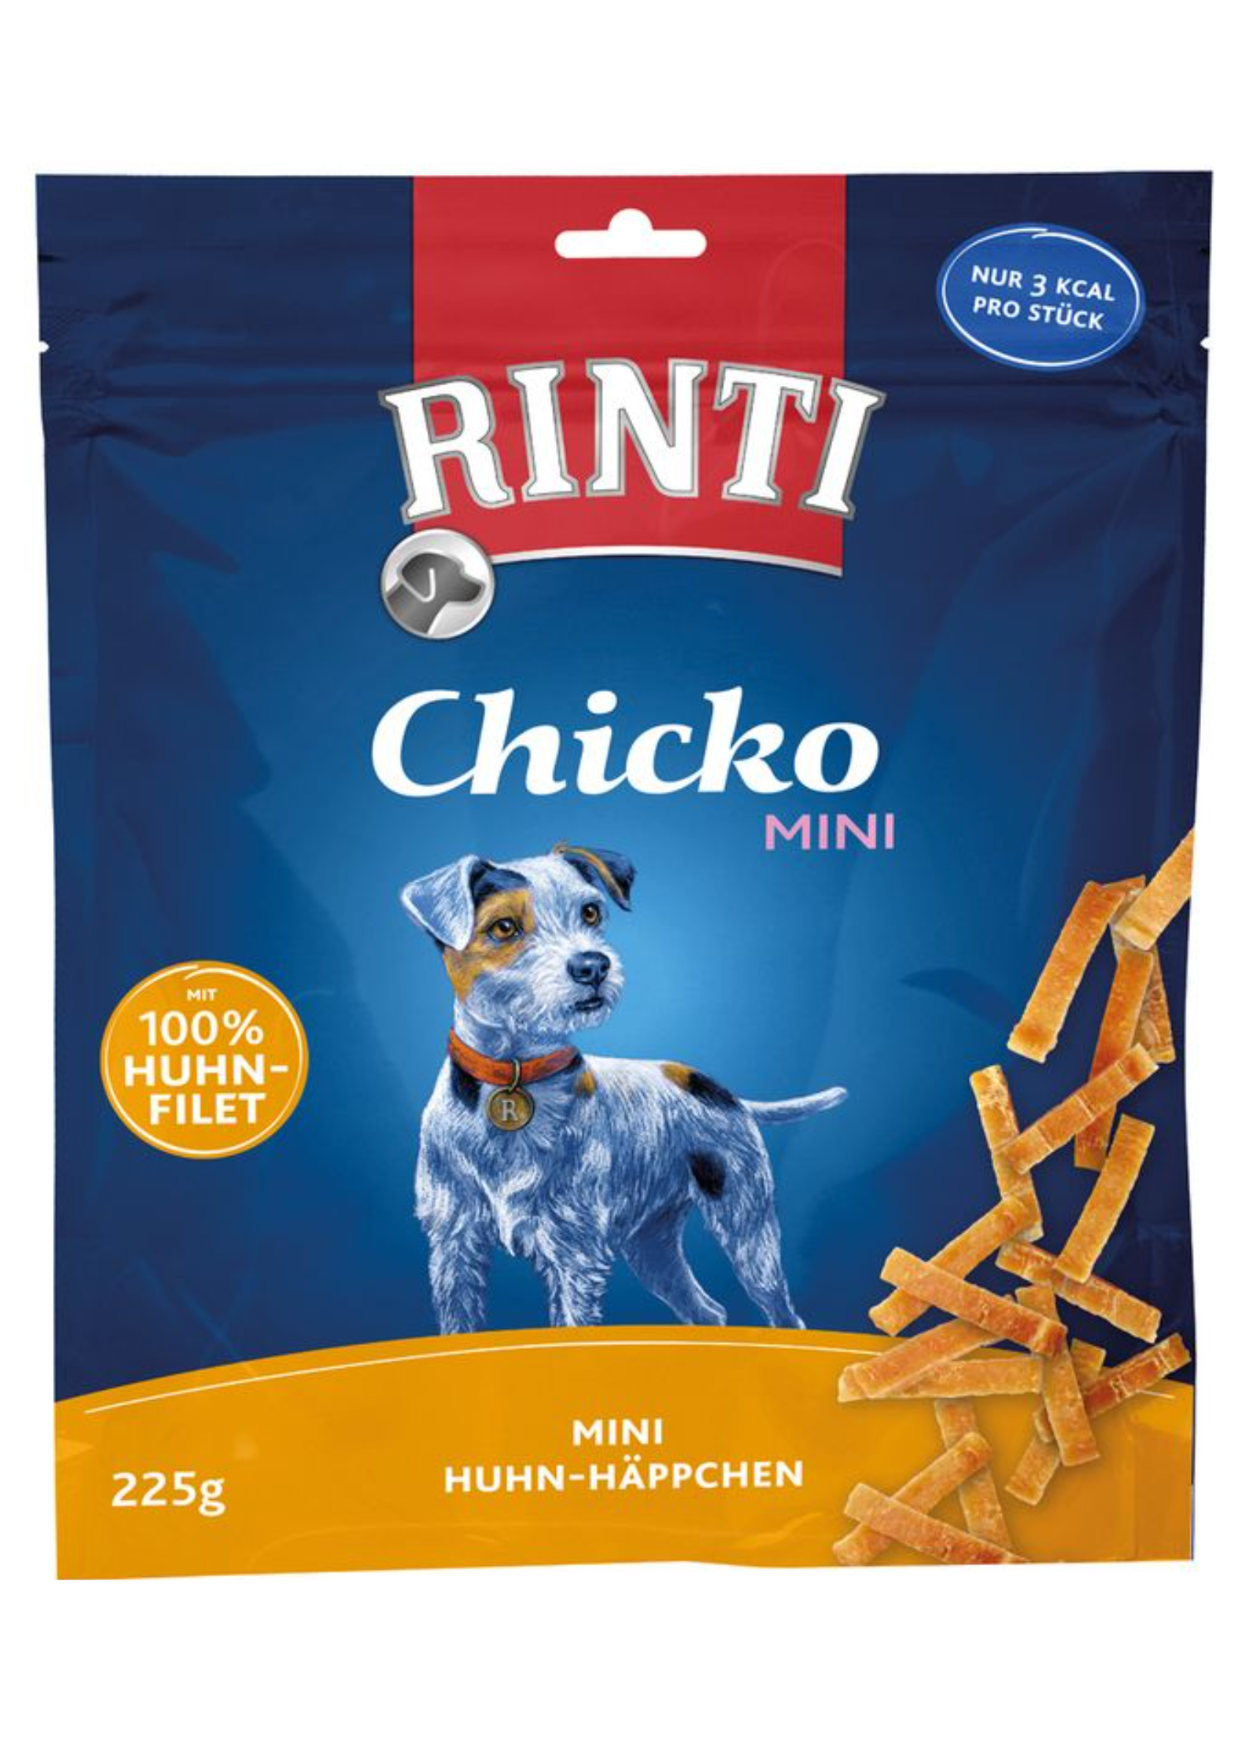 Rinti Chicko mini - Huhn